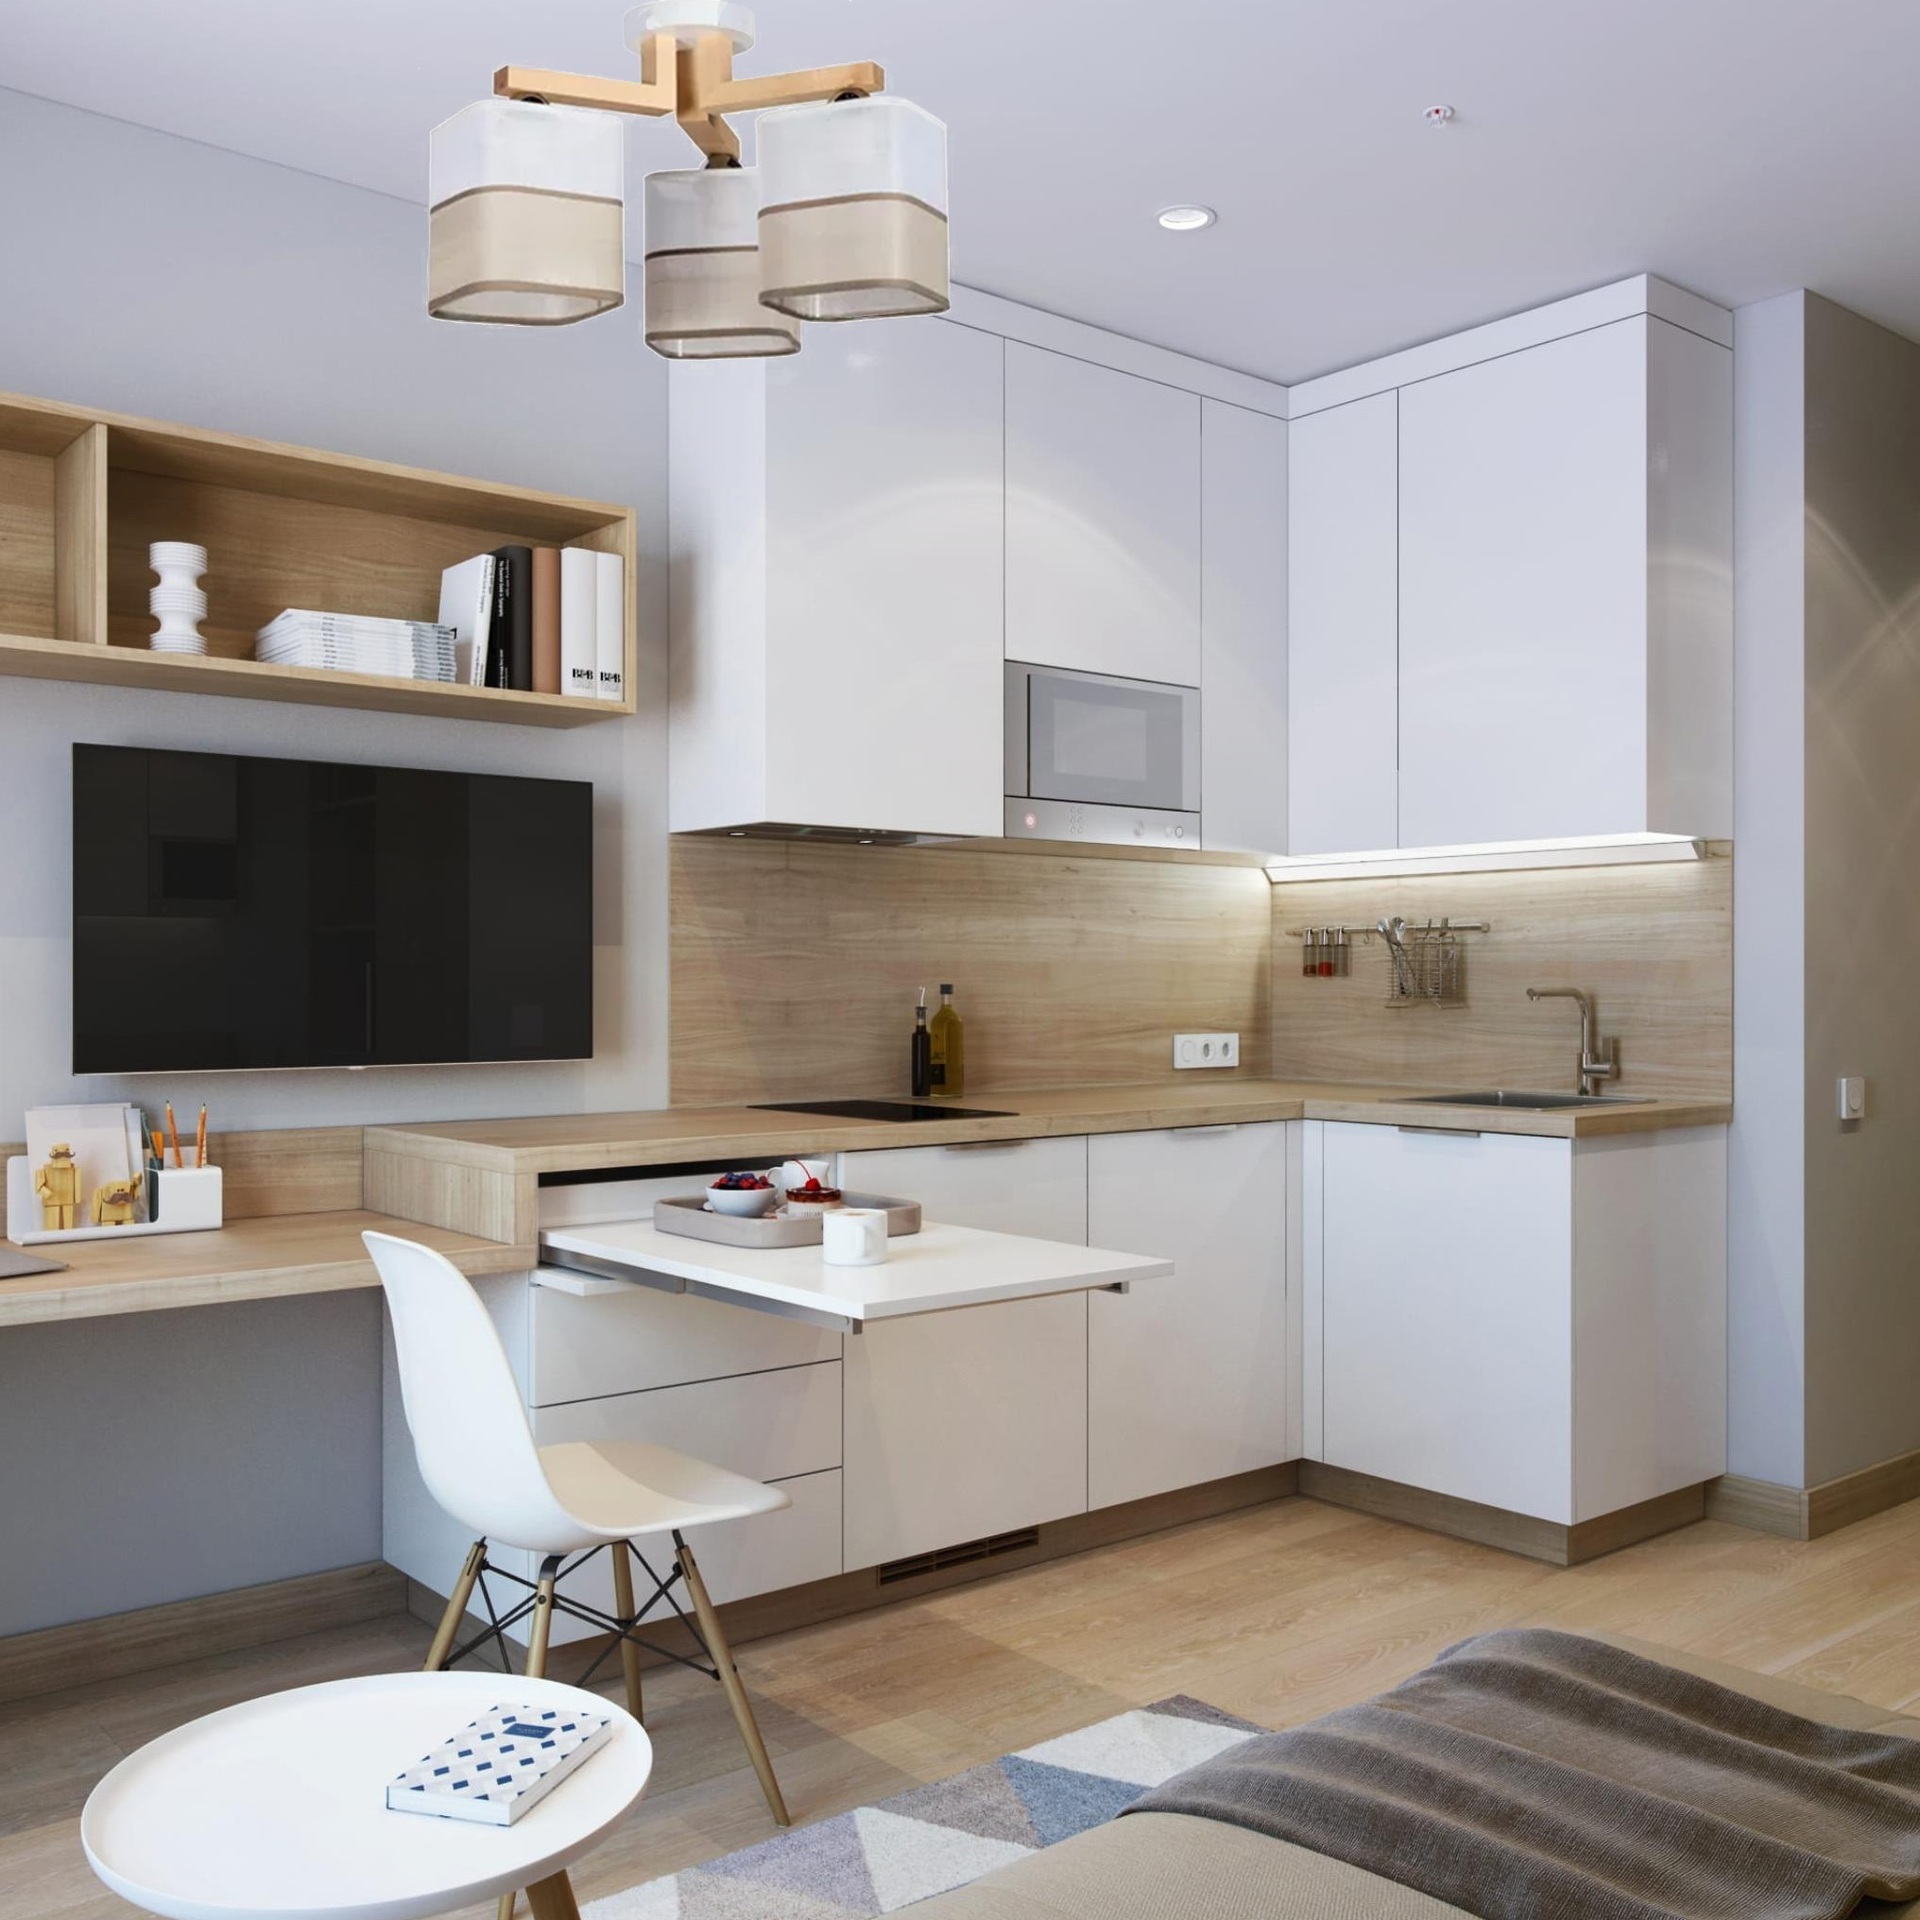 Фото кухонь в современном стиле в квартире угловая